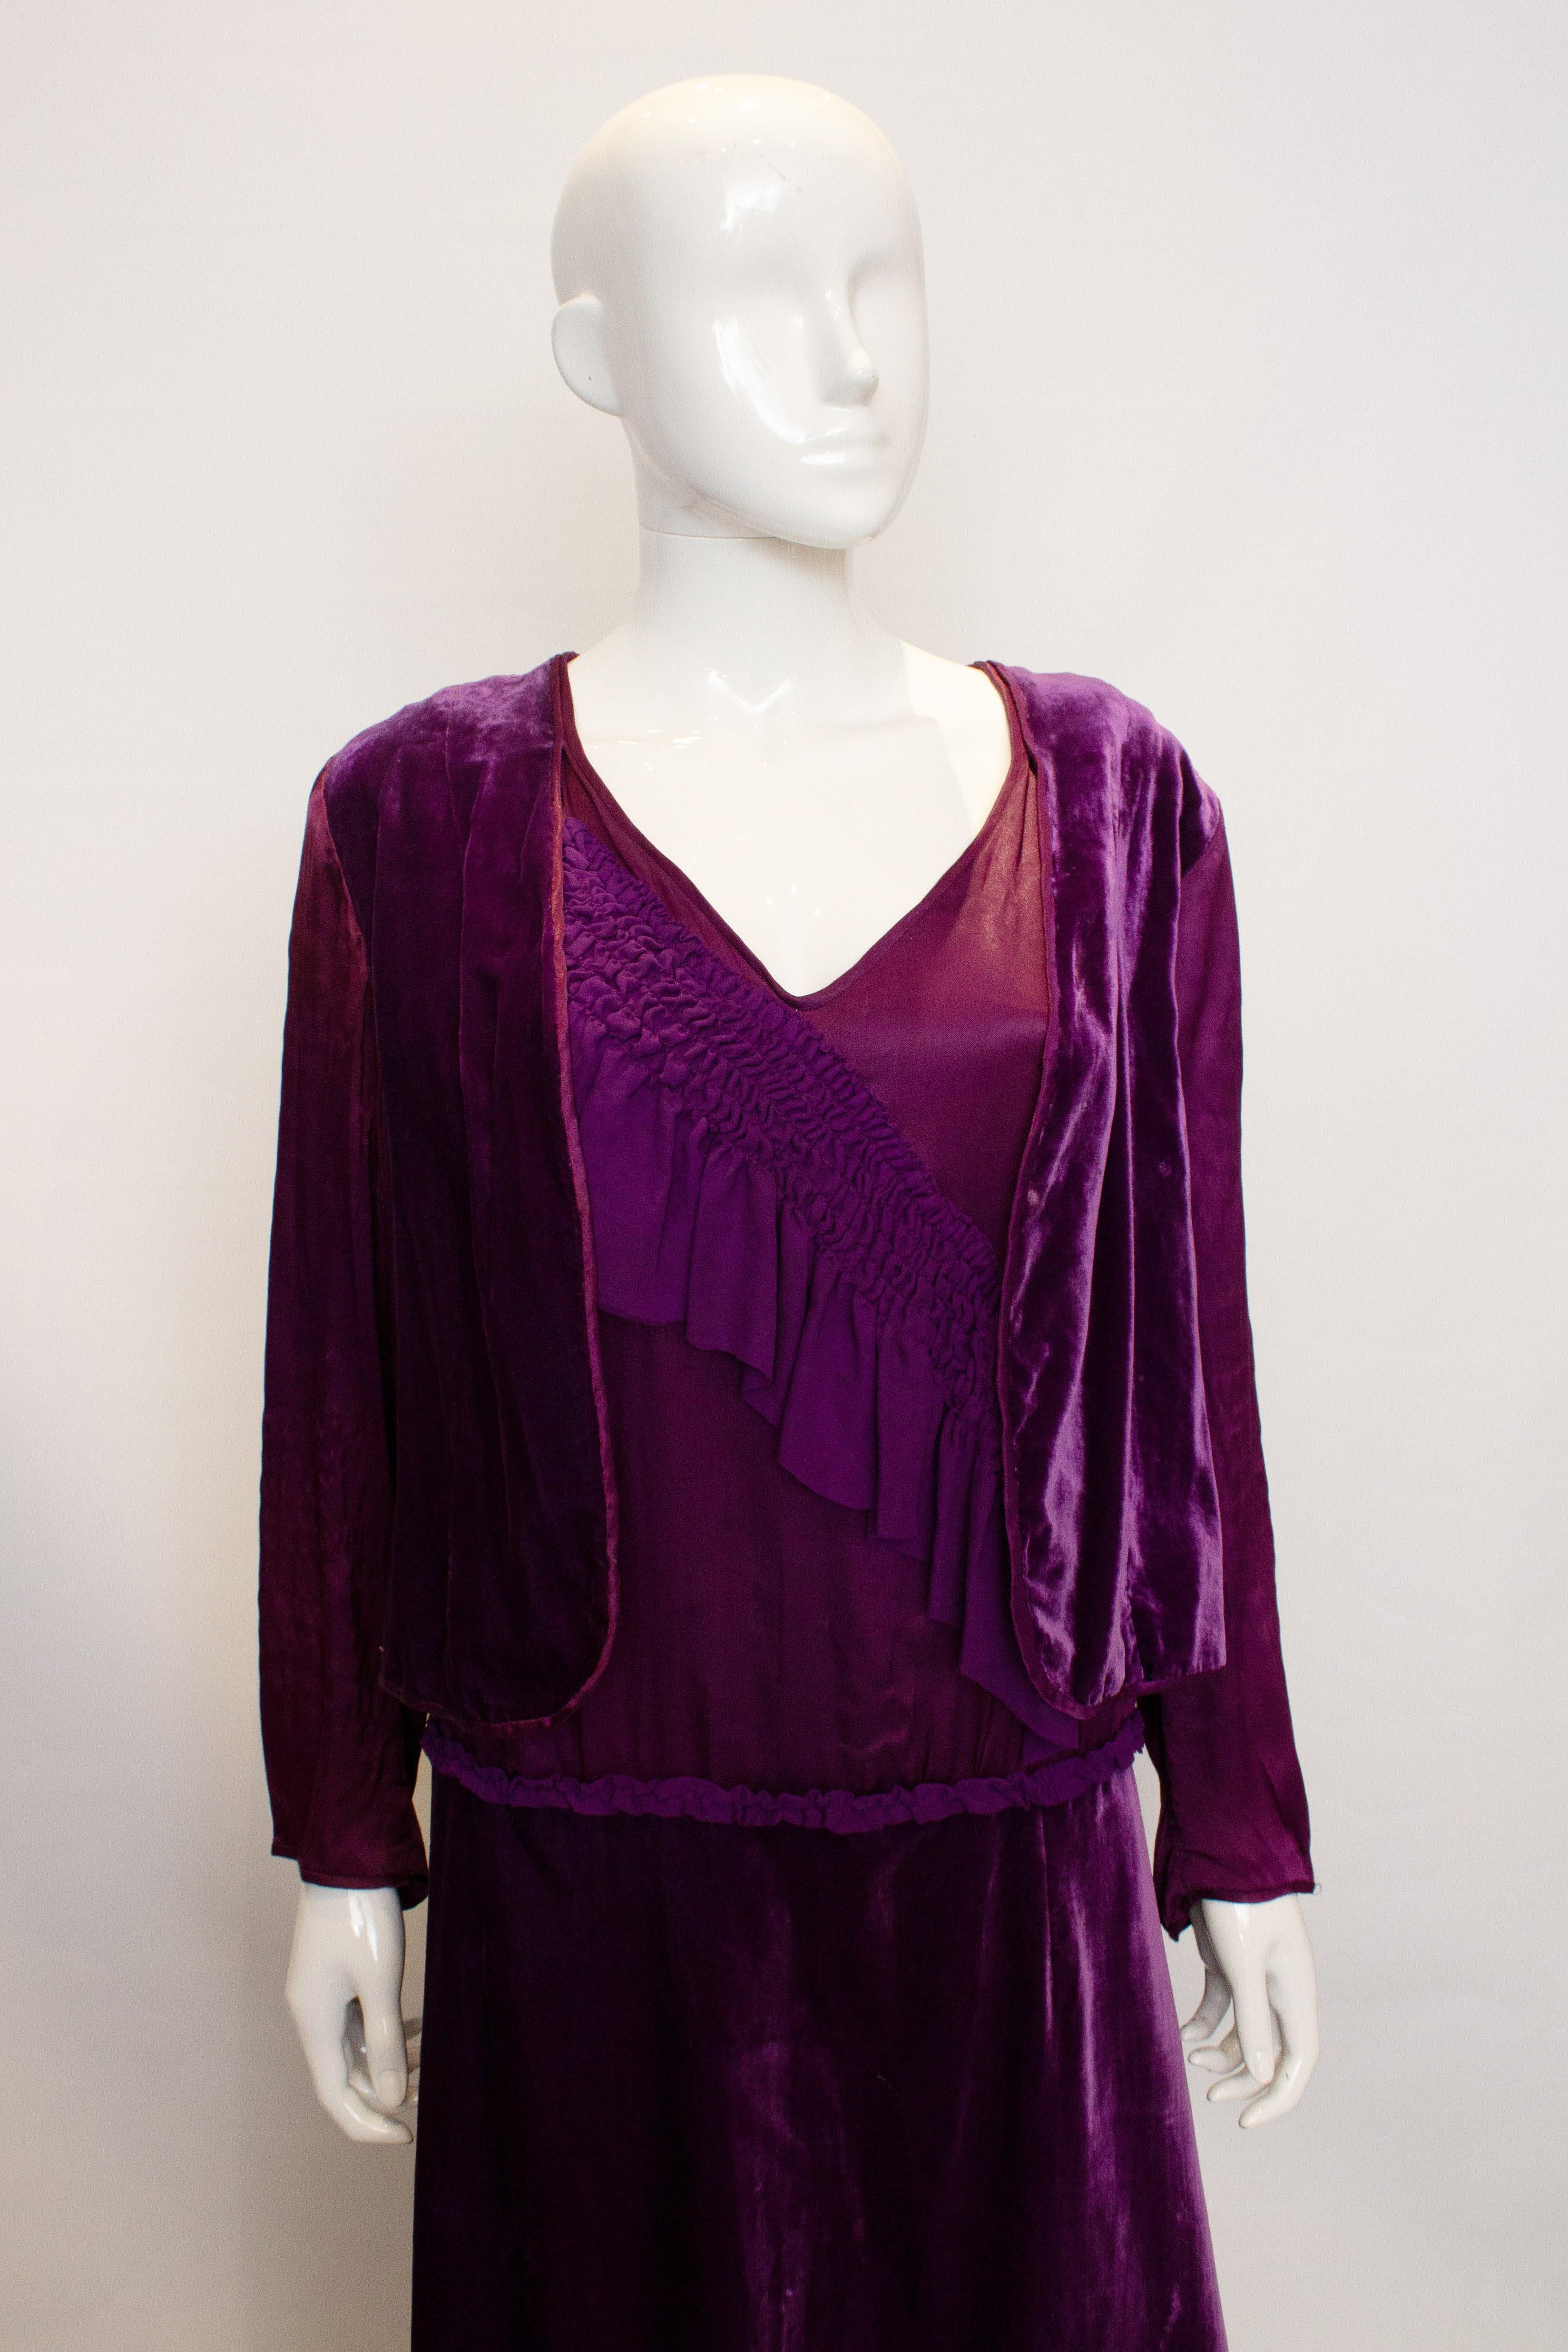 Ein atemberaubendes violettes Kleid aus den 1920er Jahren. Das Kleid hat einen V-Ausschnitt und eine Seidenraffung auf der Vorderseite. Es hat Ärmel aus Satin und Rüschen am Rücken. 
